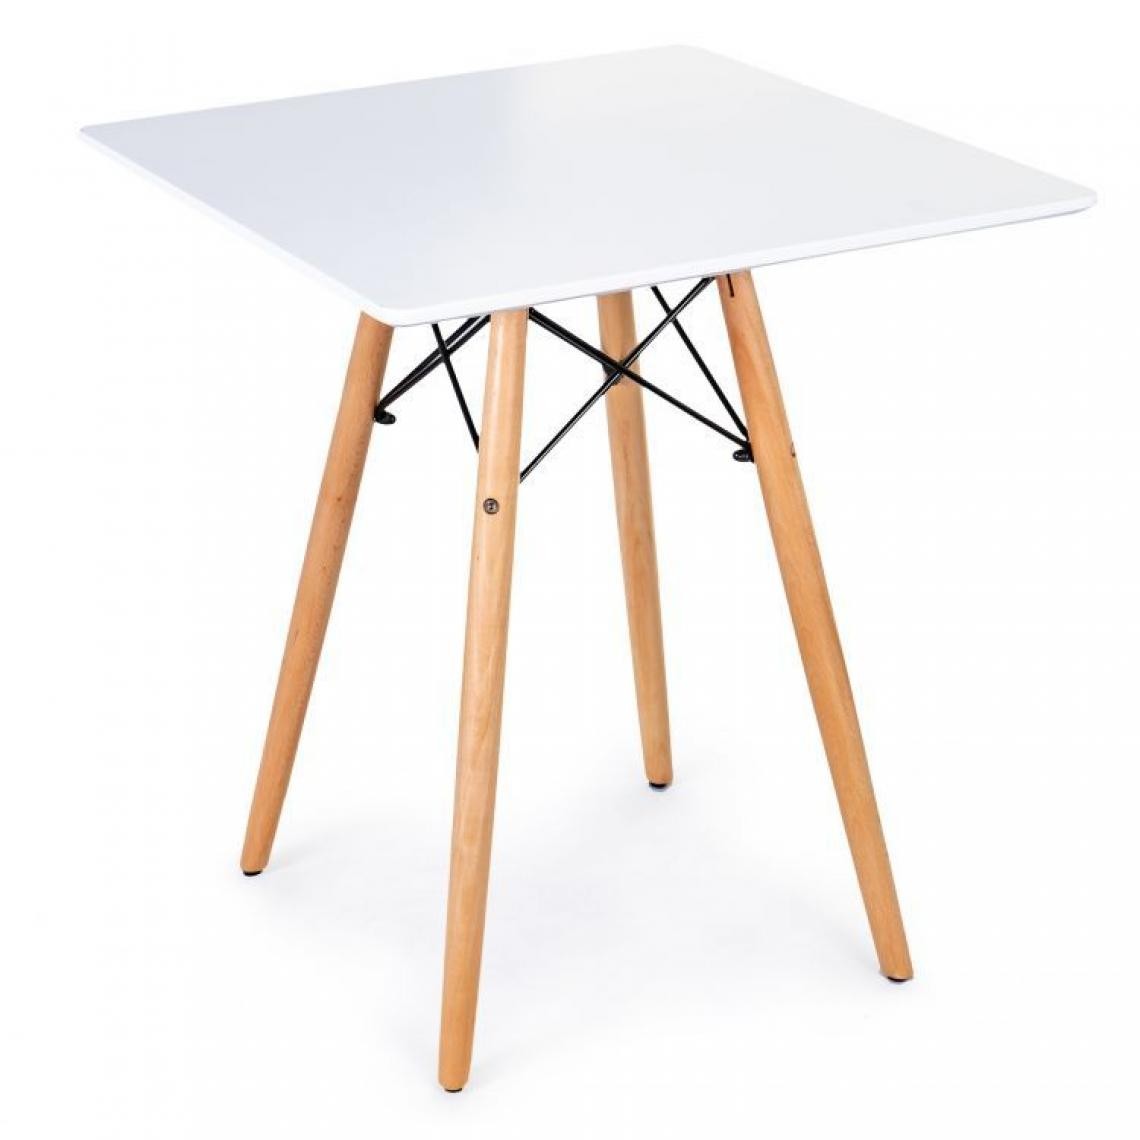 Hucoco - MSTORE - Table moderne pour la salle à manger salon cuisine - Plateau 60x60 cm - Style scandinave - 4 pieds en hêtre - Blanc - Tables à manger